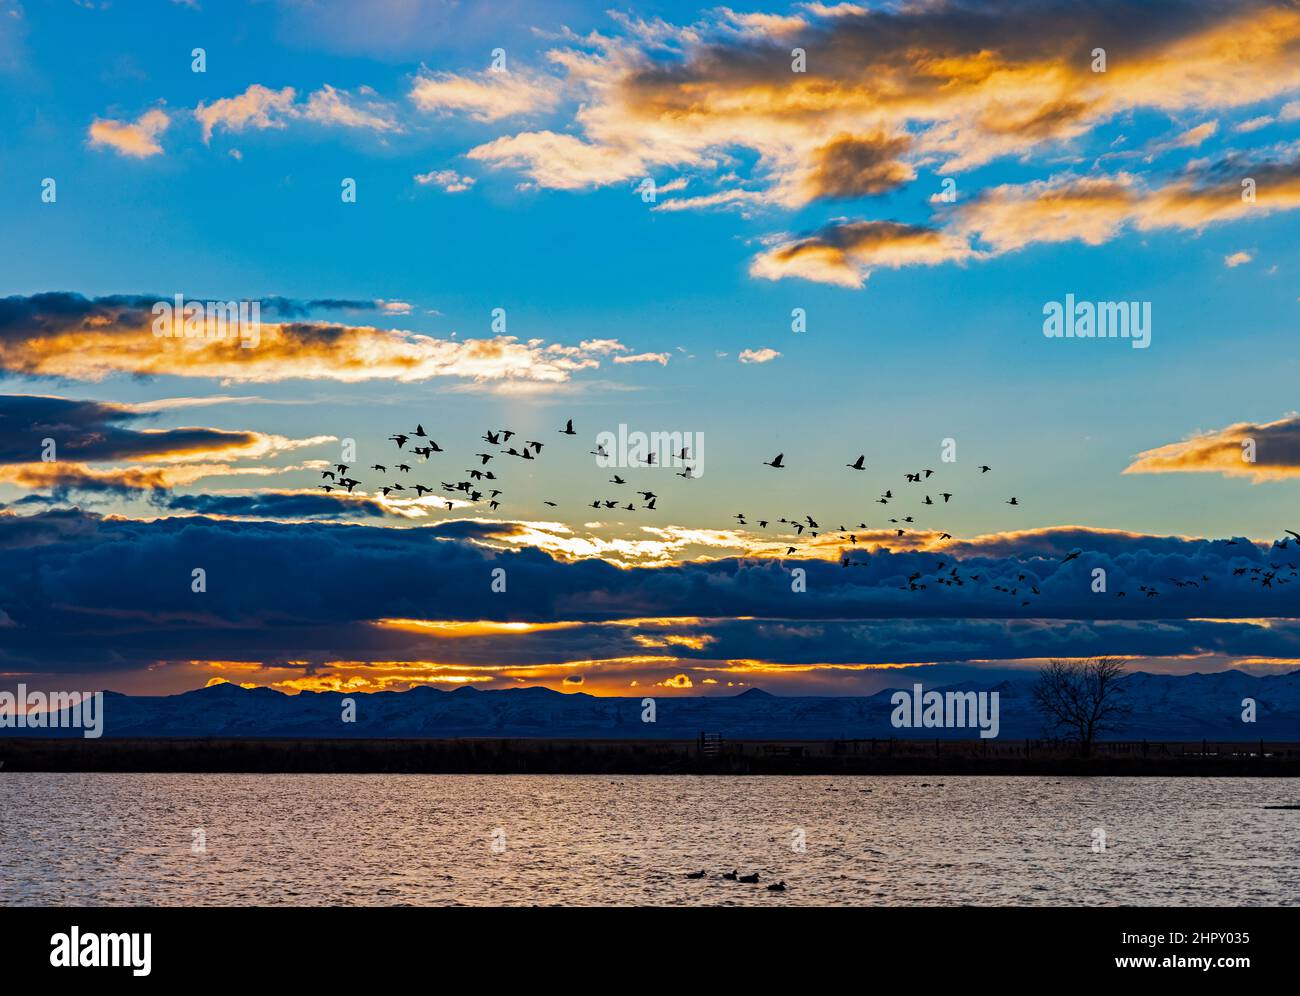 Les cygnes siffleurs (Cygnus columbianus) survolent l'eau au coucher du soleil dans la zone de gestion de la sauvagine de Farmington Bay, Farmington, Comté de Davis, Utah, États-Unis. Banque D'Images